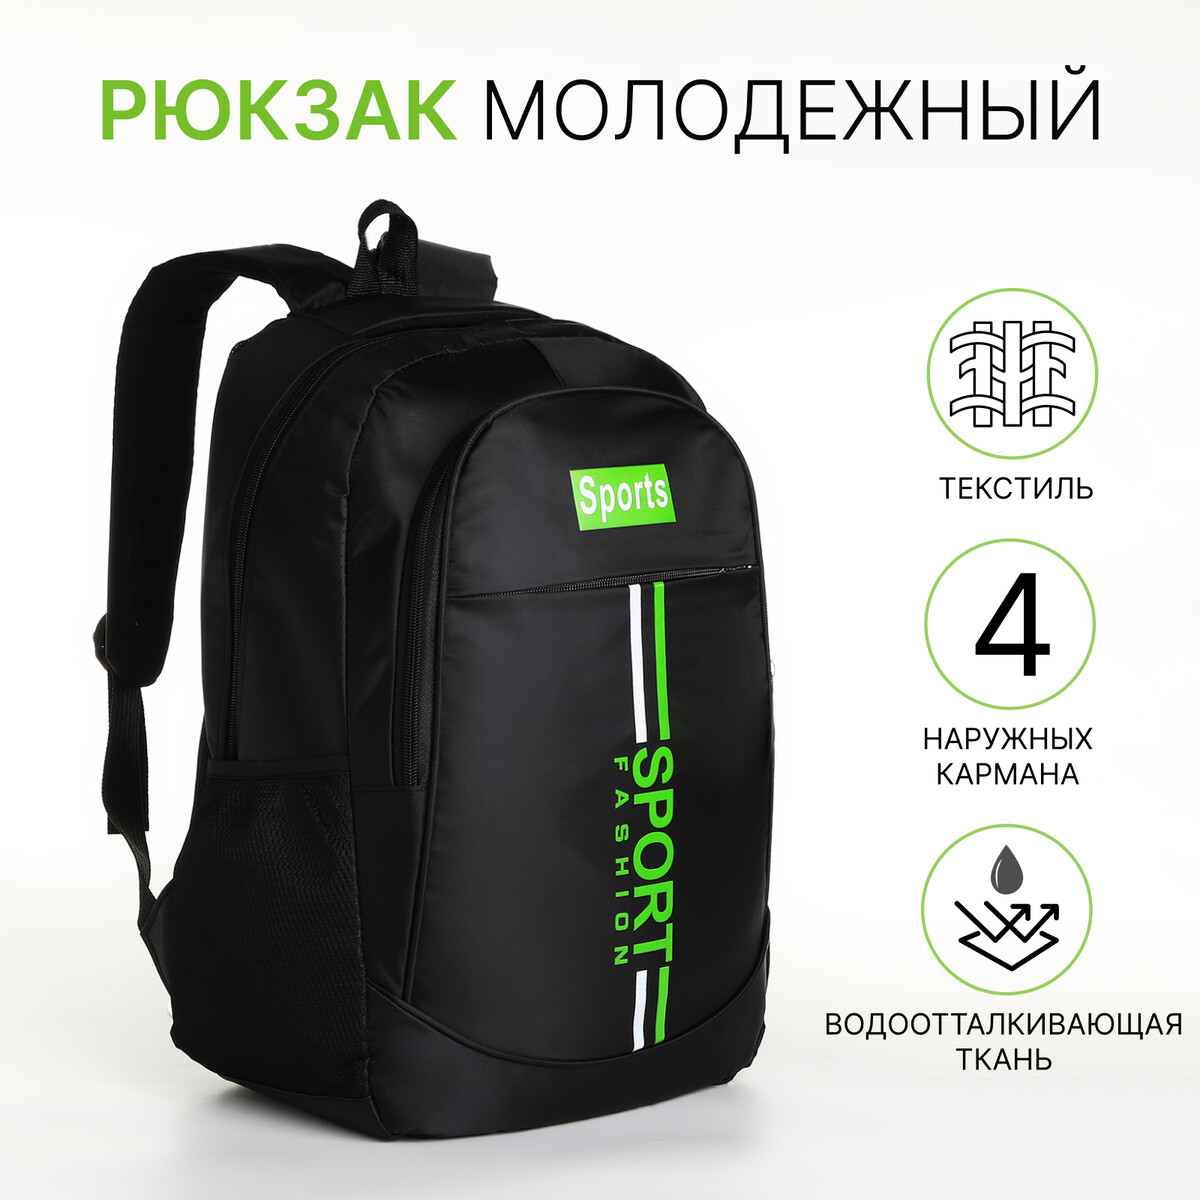 Рюкзак молодежный на молнии, 4 кармана, цвет черный/зеленый рюкзак молодежный из текстиля на молнии 3 кармана зеленый